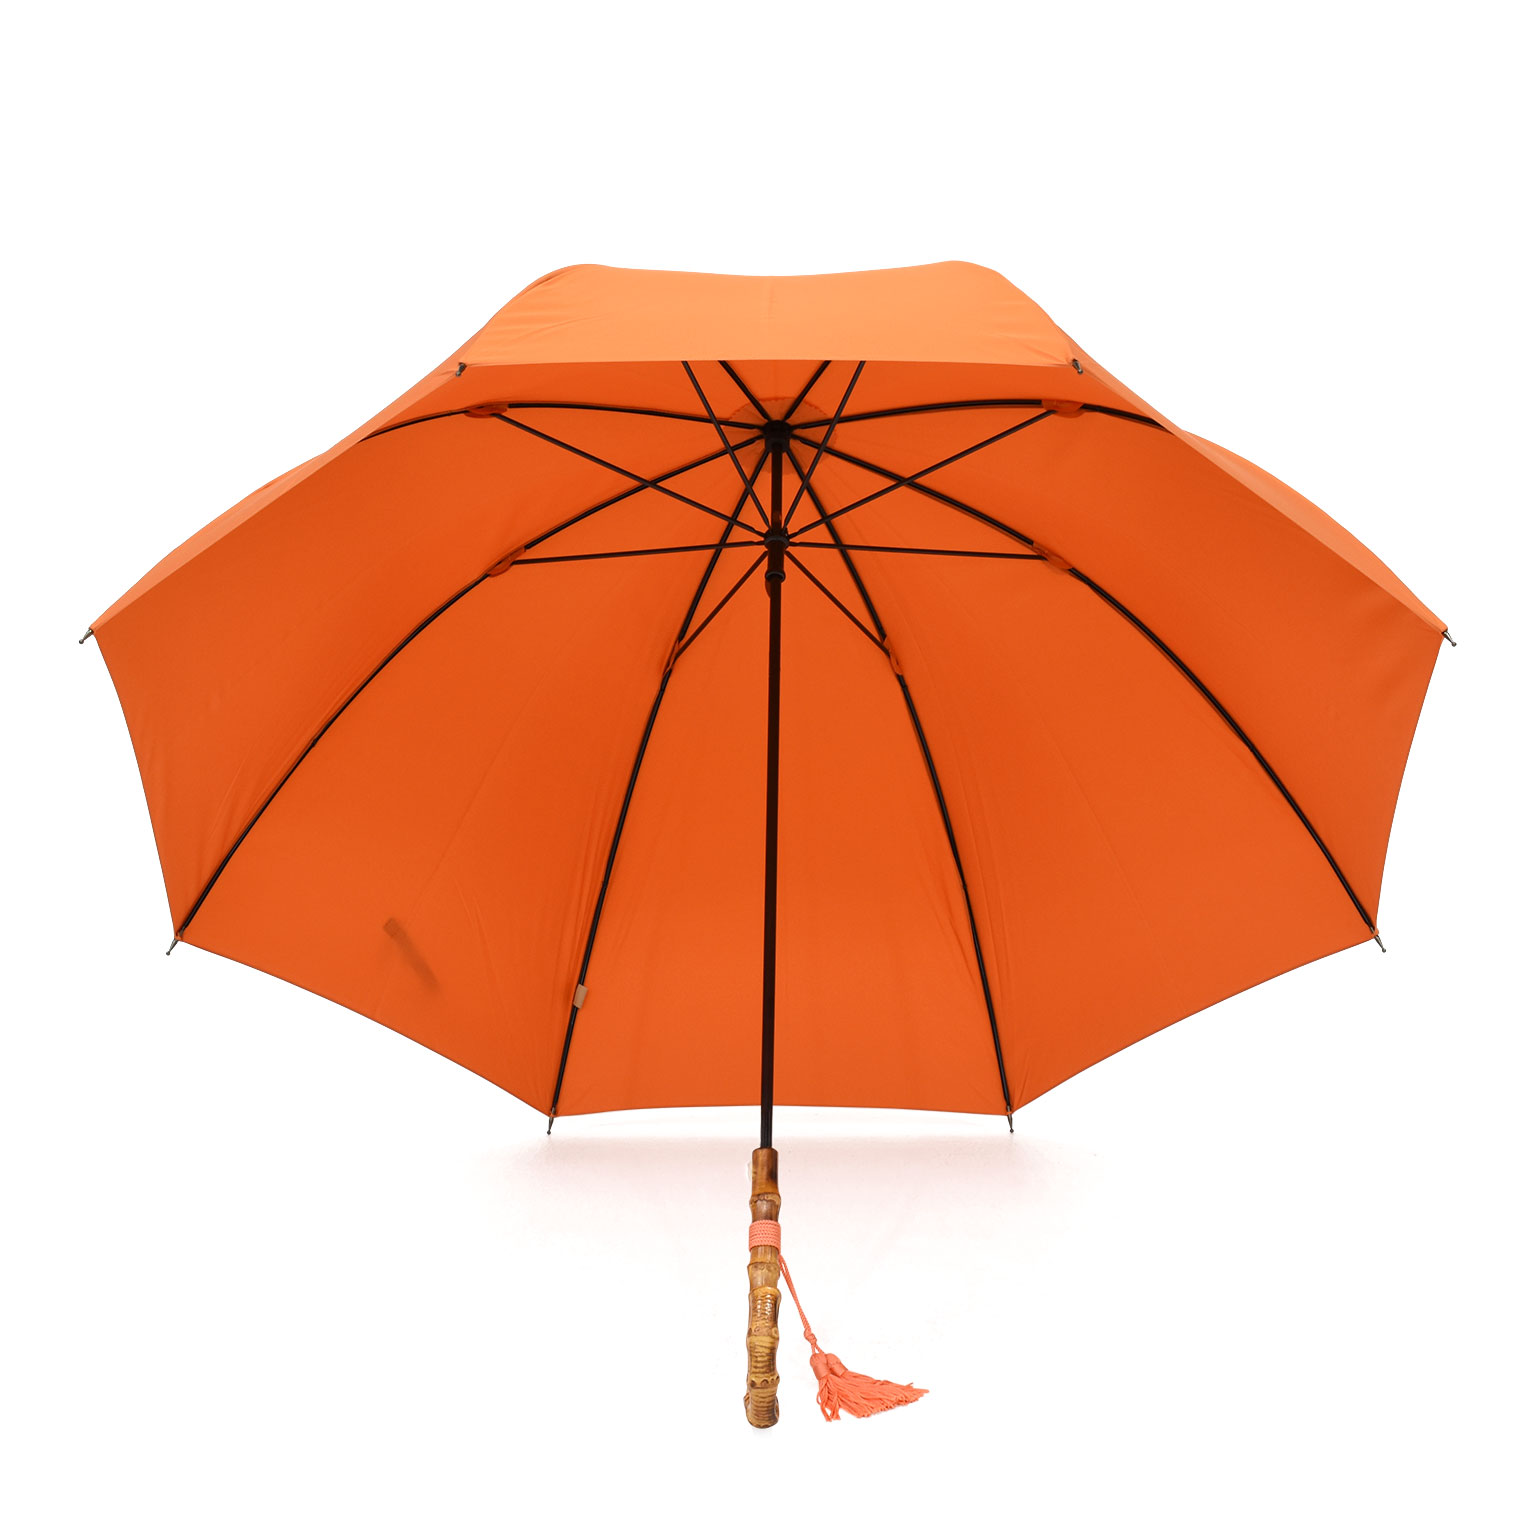 ドーム型バンブー長傘